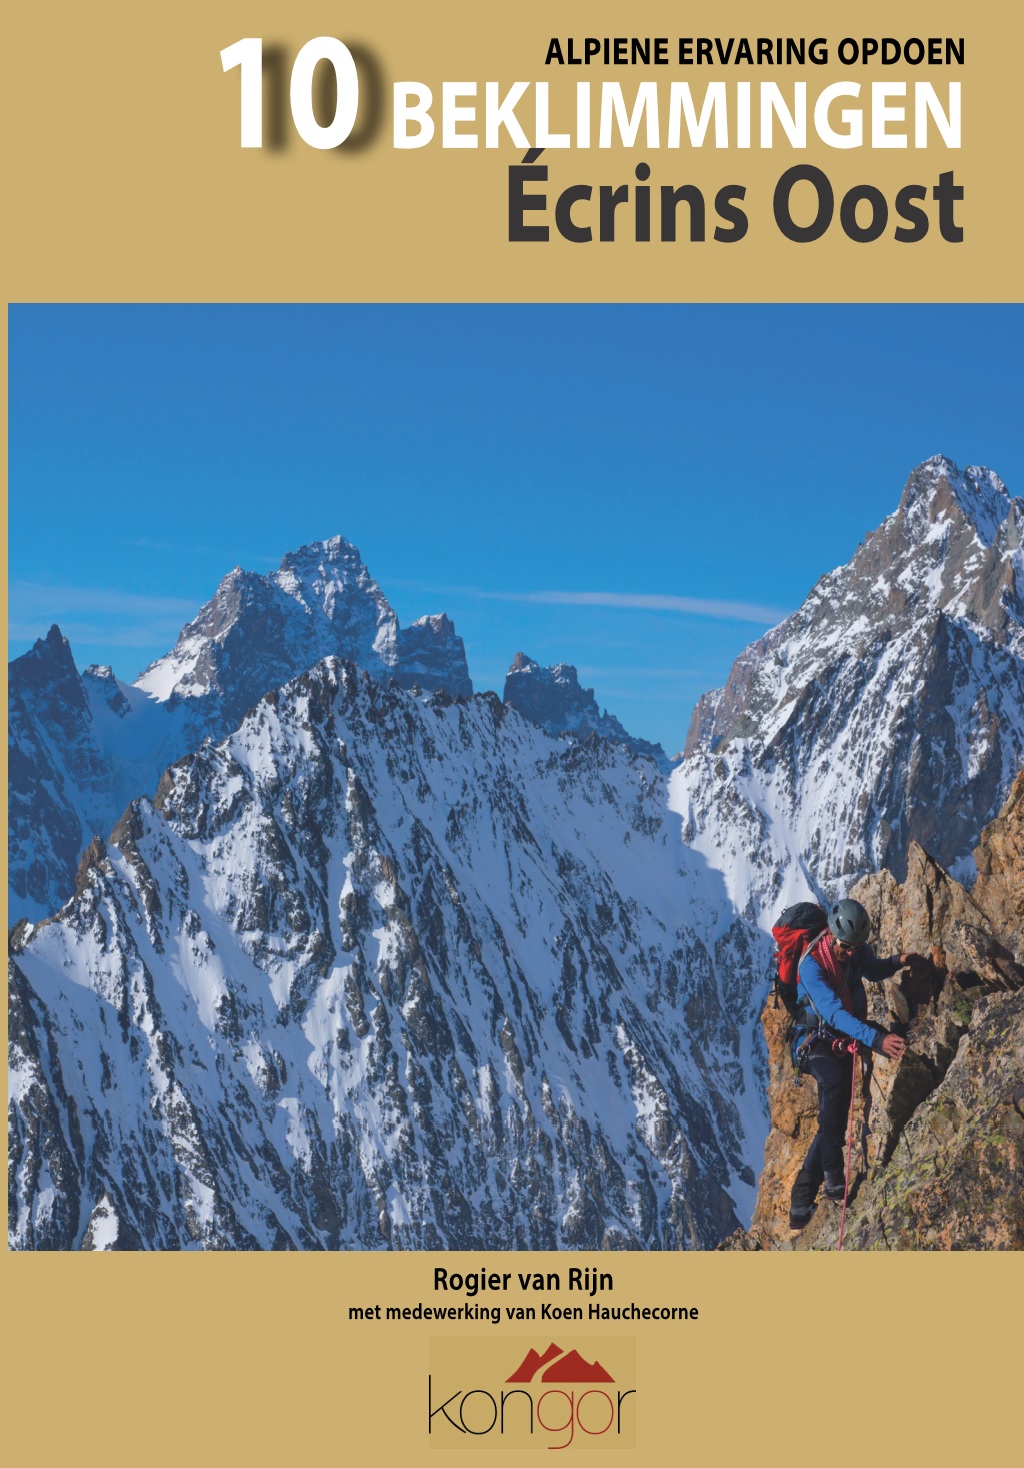 Alpiene Ervaring Opdoen - 10 Beklimmingen Ecrins Oost